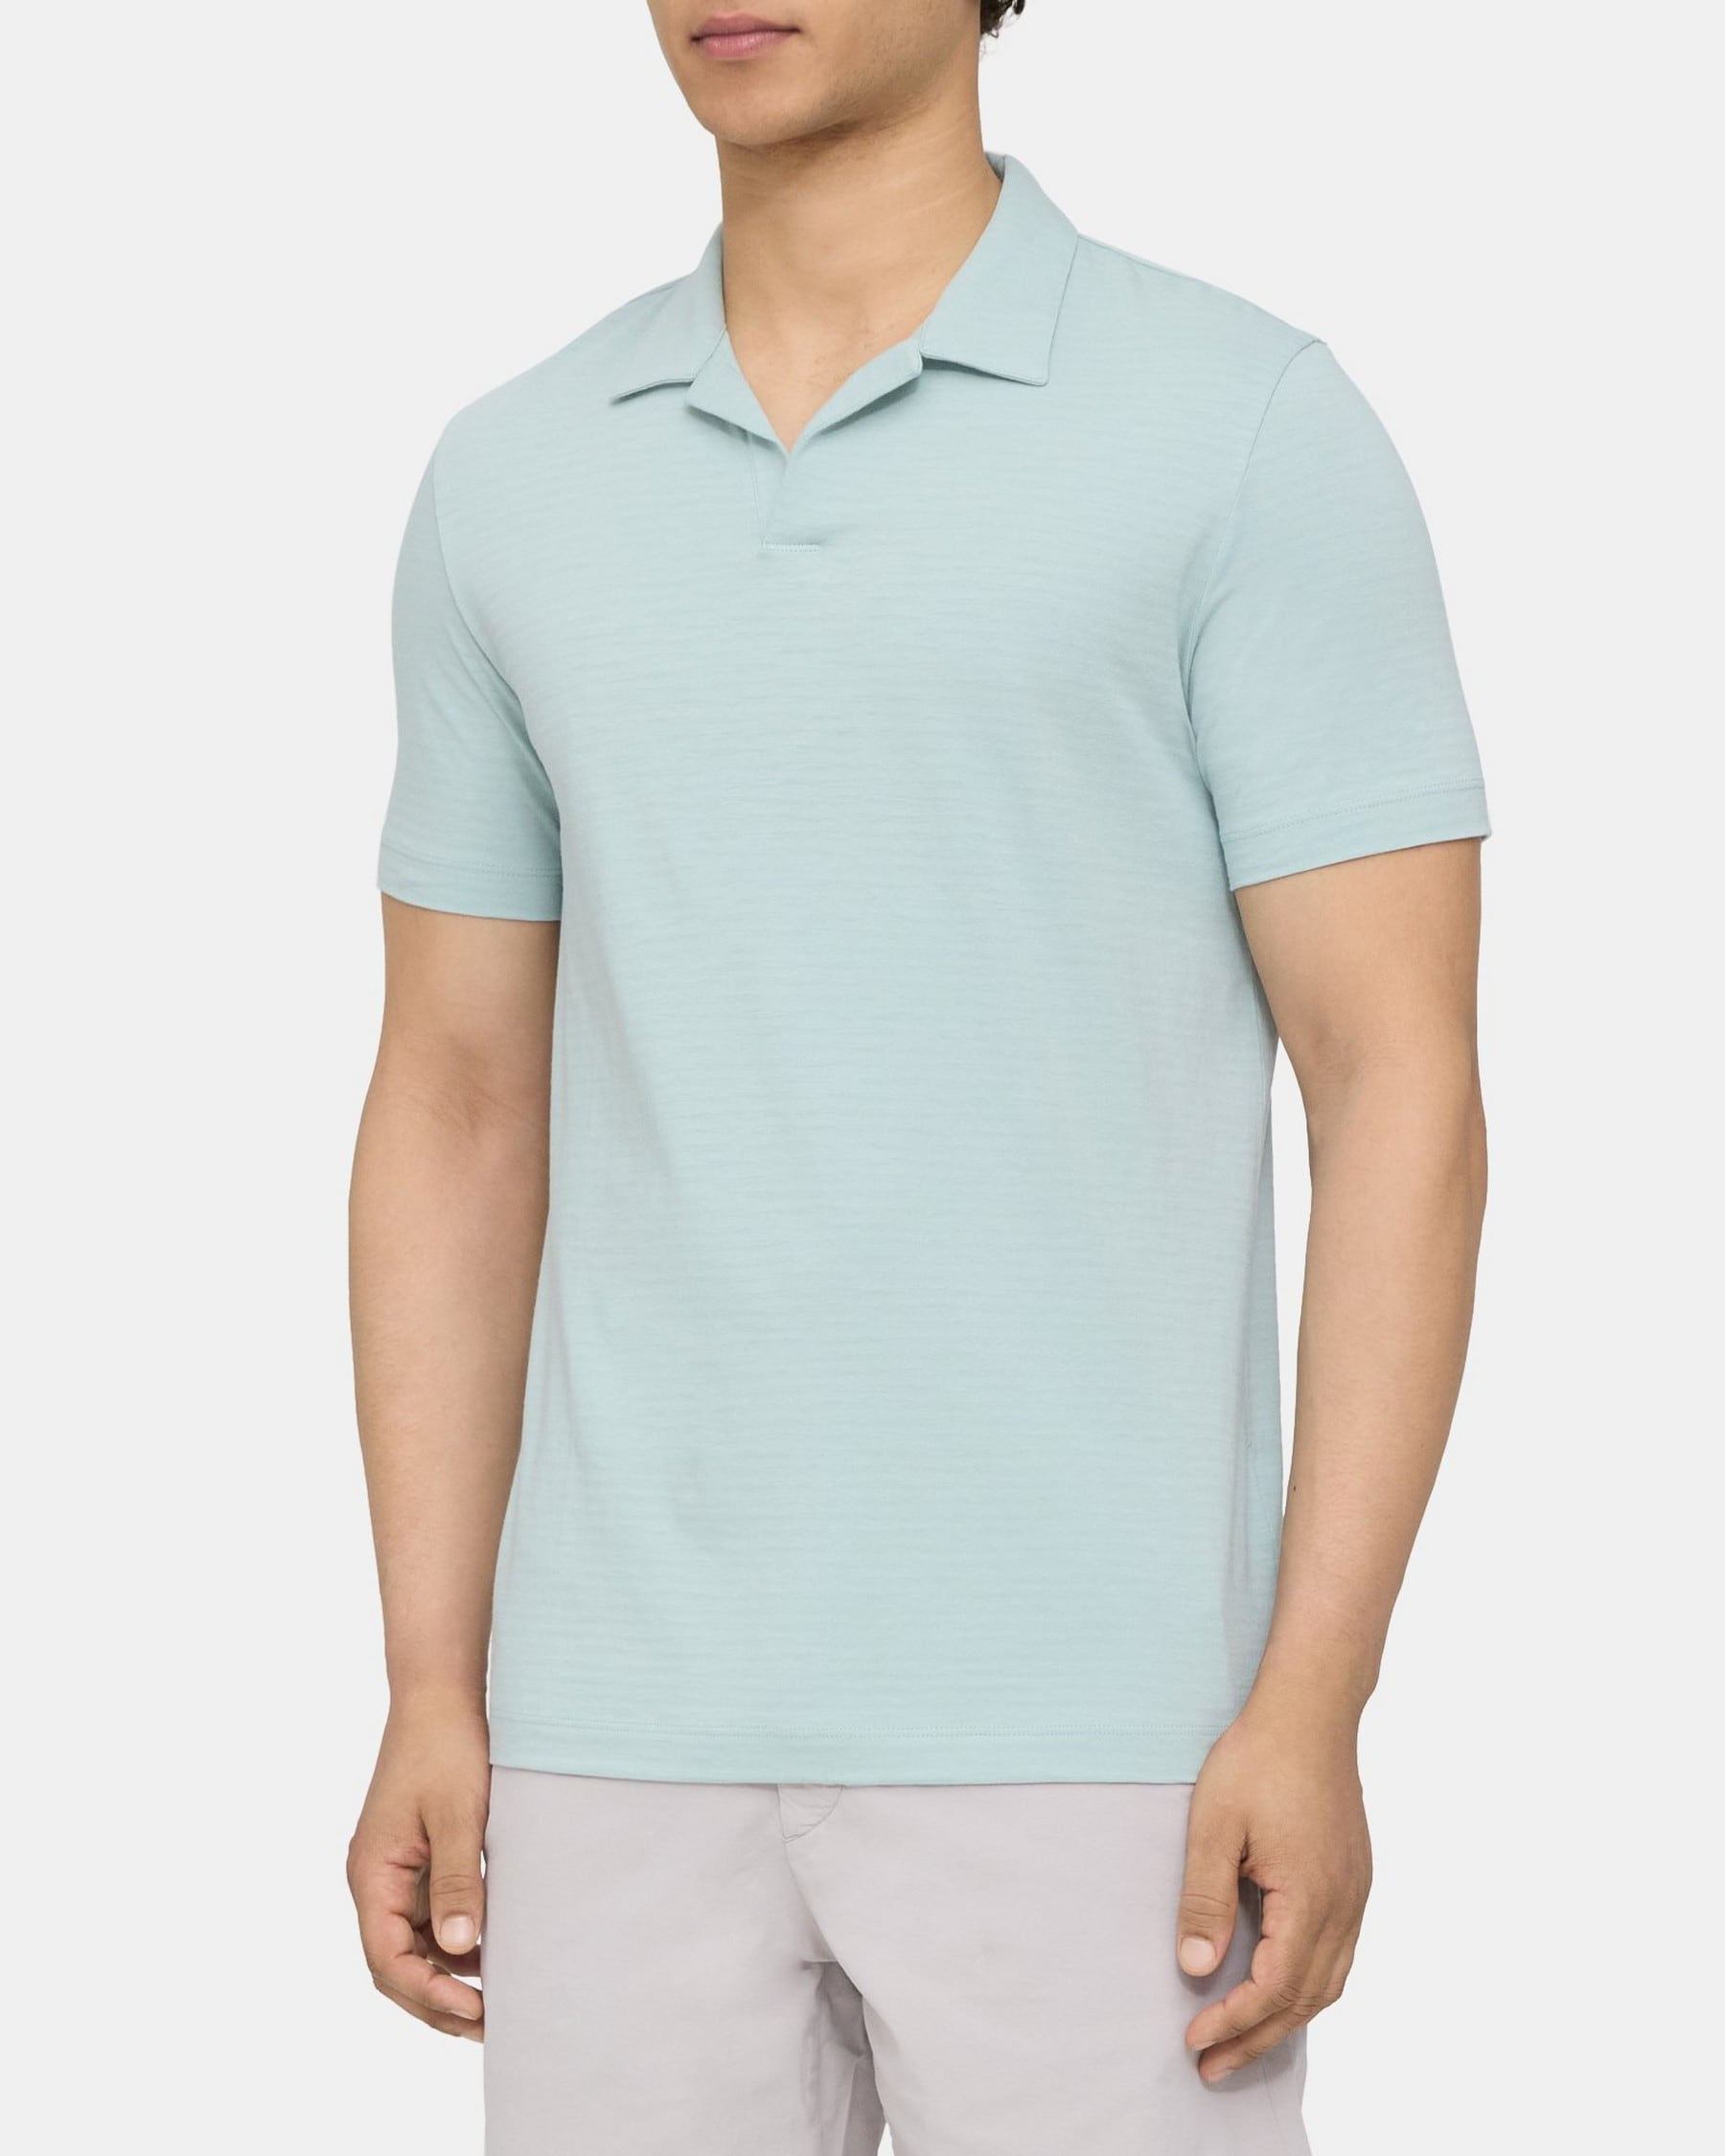 Polo Shirt in Cotton-Modal